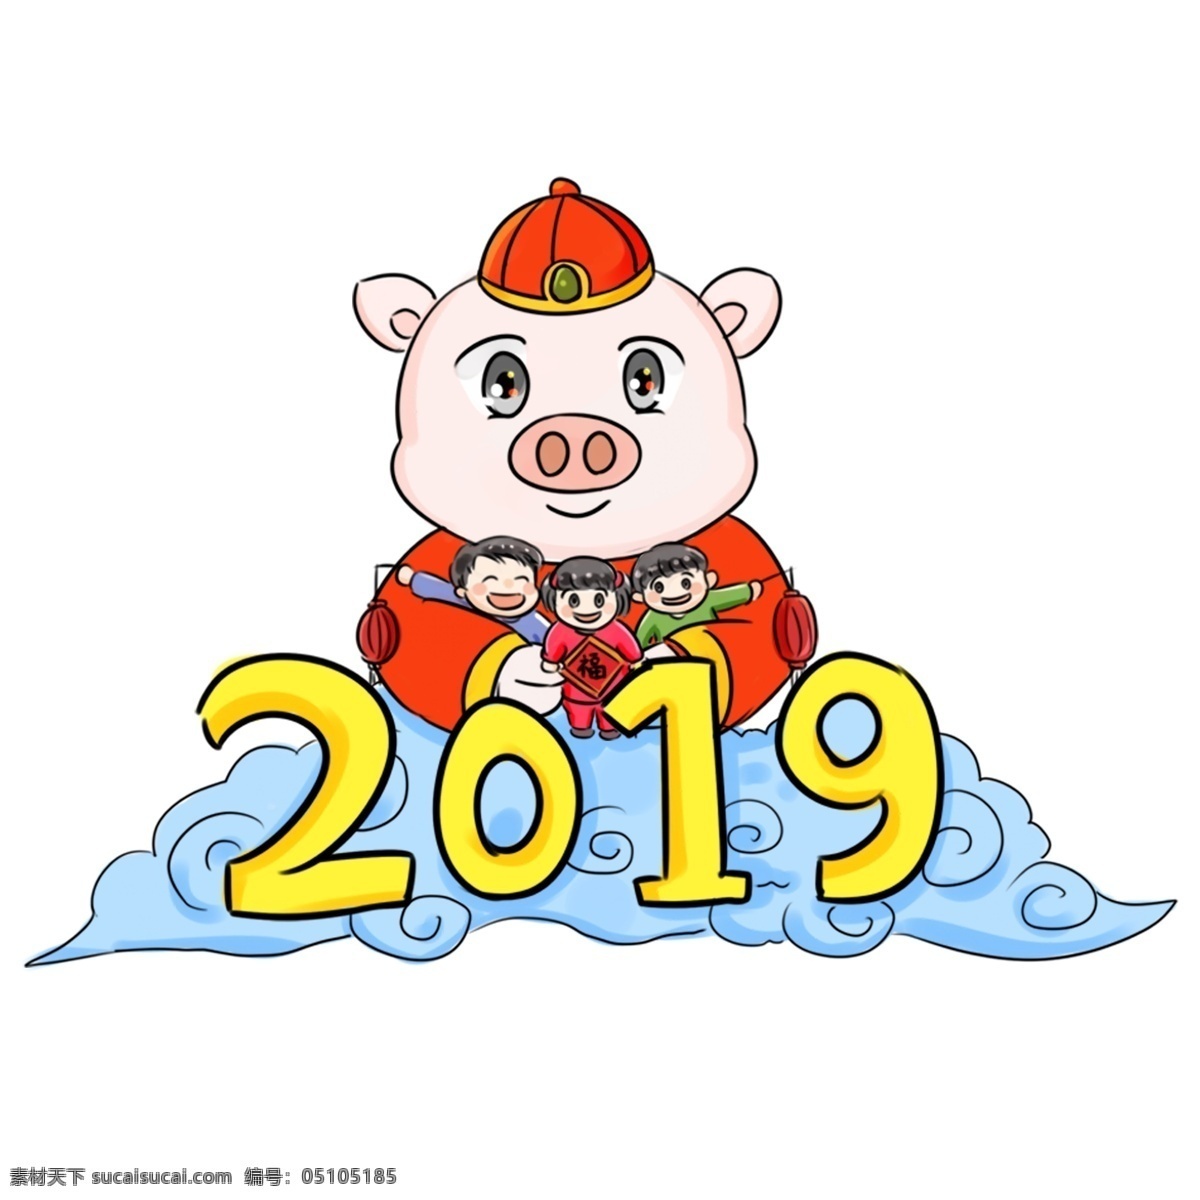 2019 猪年 新年 祝福 系列 卡通 手绘 q 版 好 新气象 手绘卡通 粉红猪 可爱 团聚 过年 烟花 q版 新年好 喜迎2019